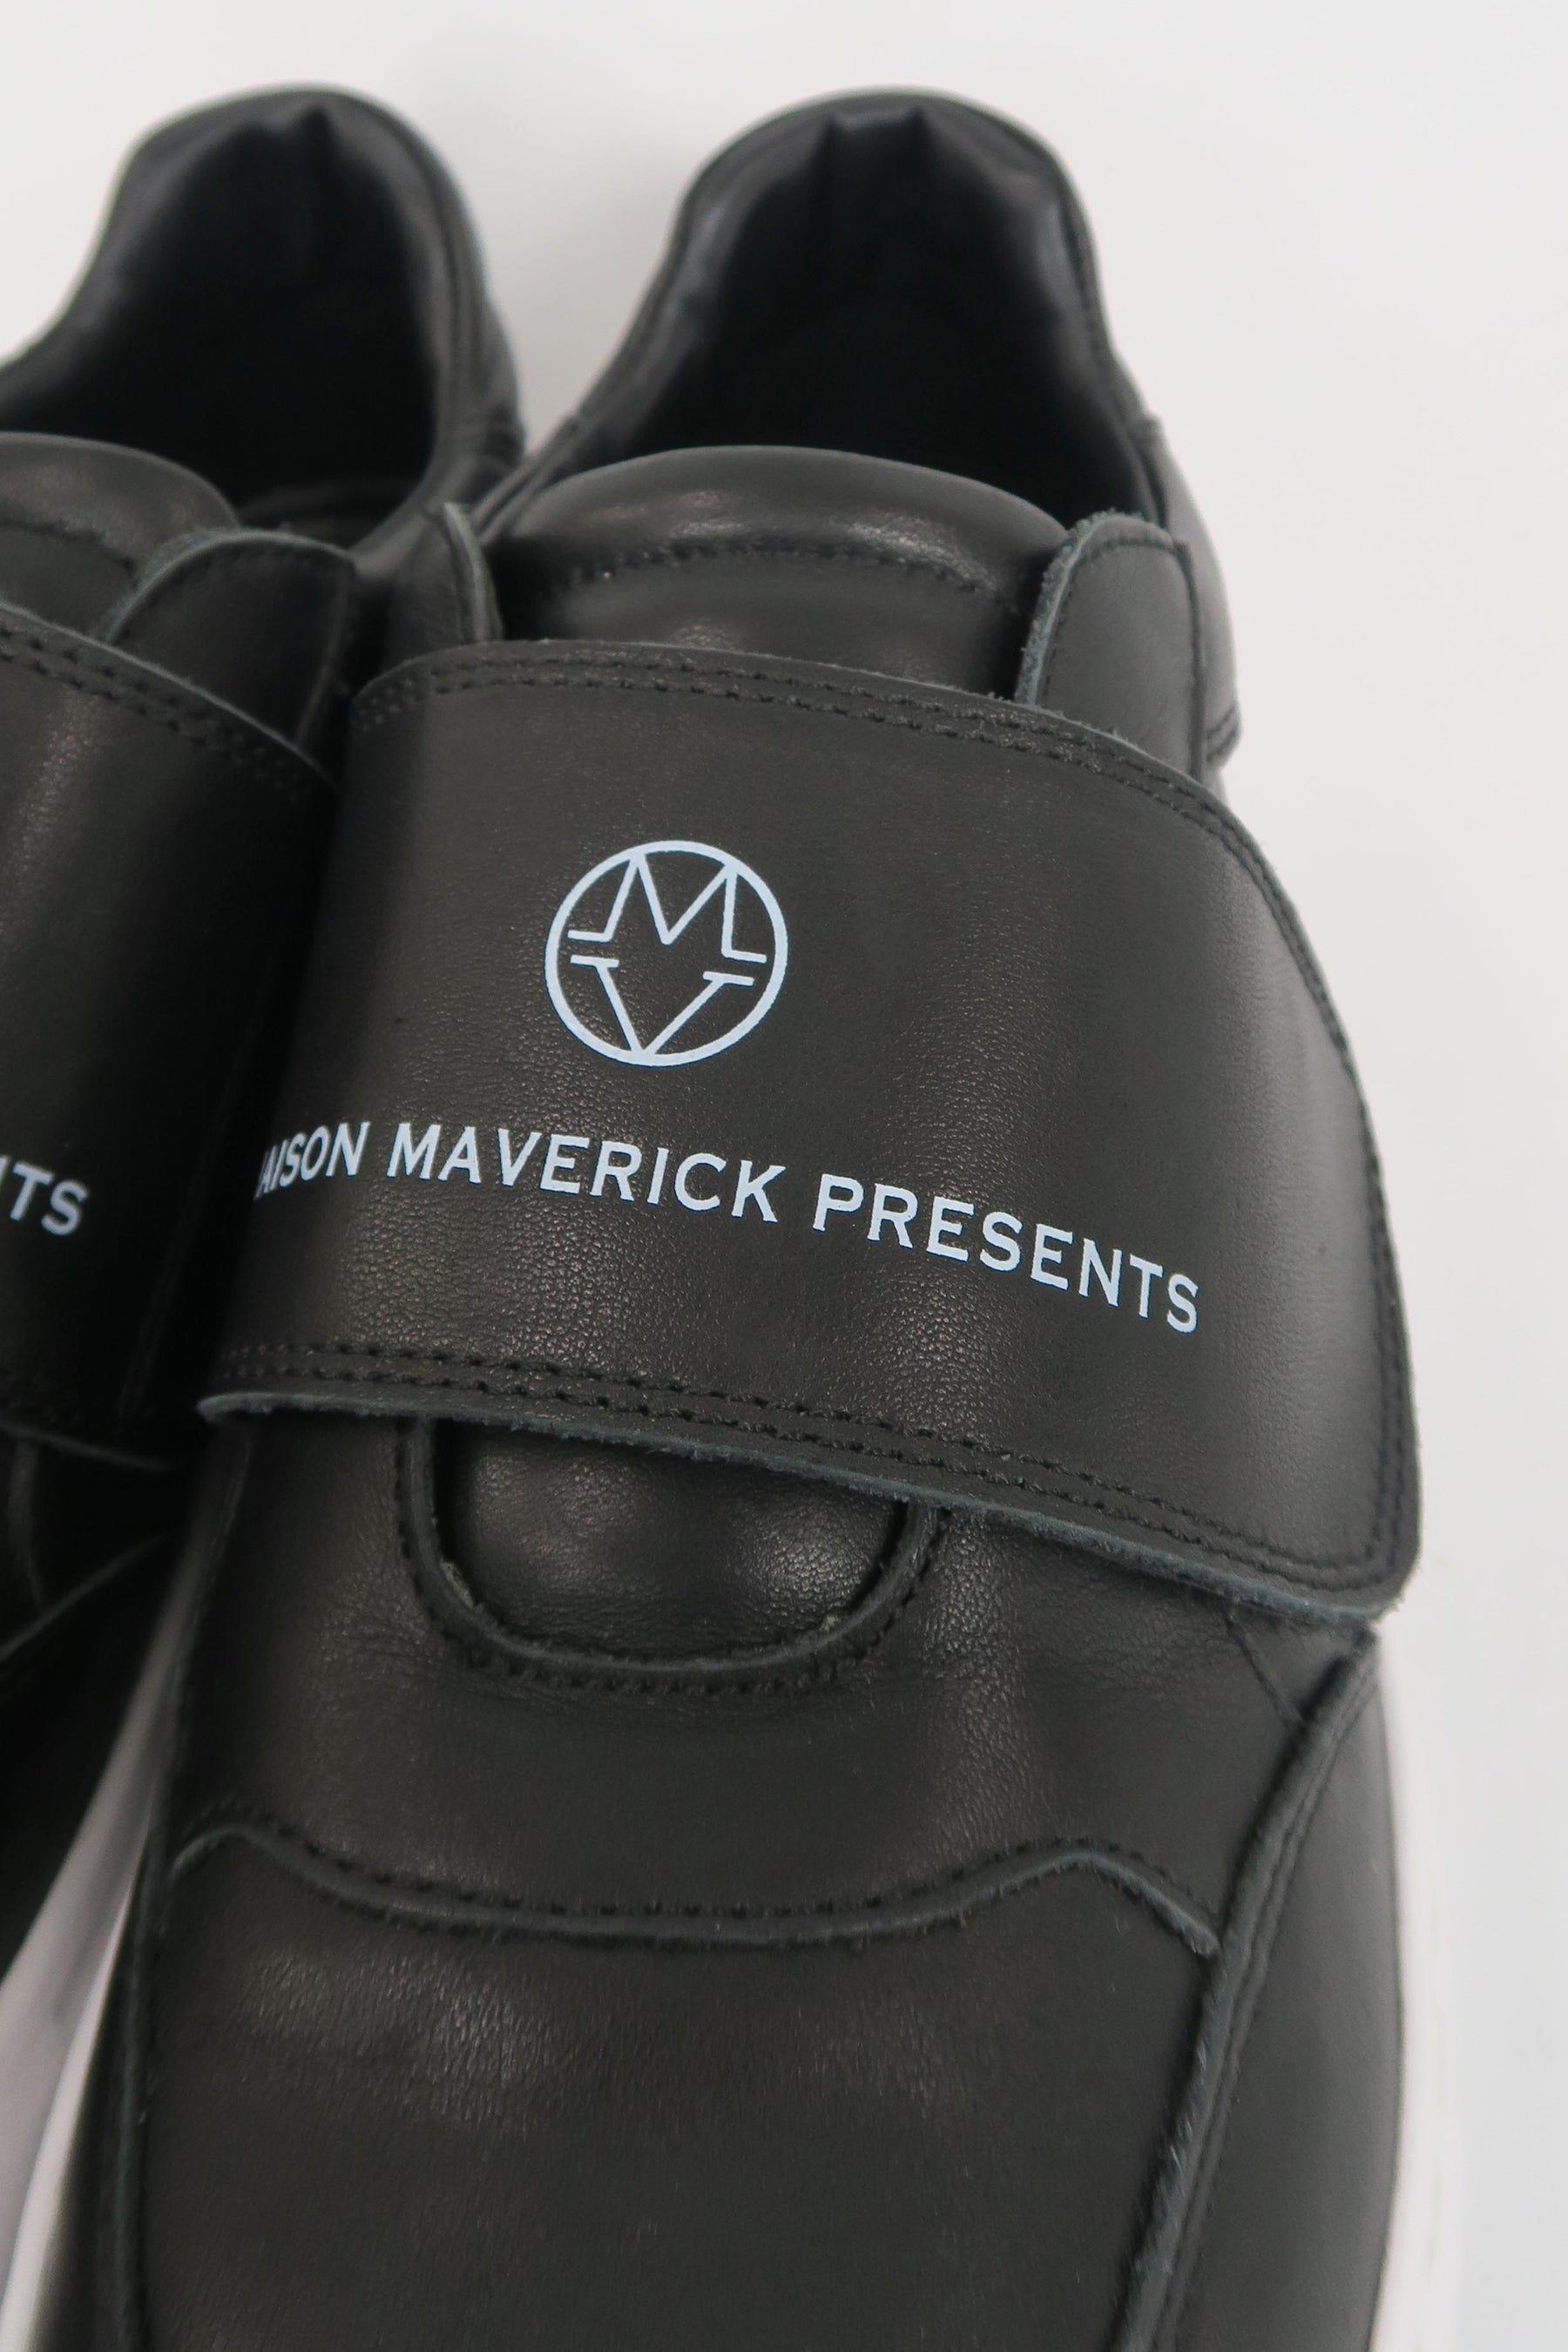 Manson maverick presents(メゾンマーベリックプレゼンツ)タッチストラップスニーカー MS2371　ブラック